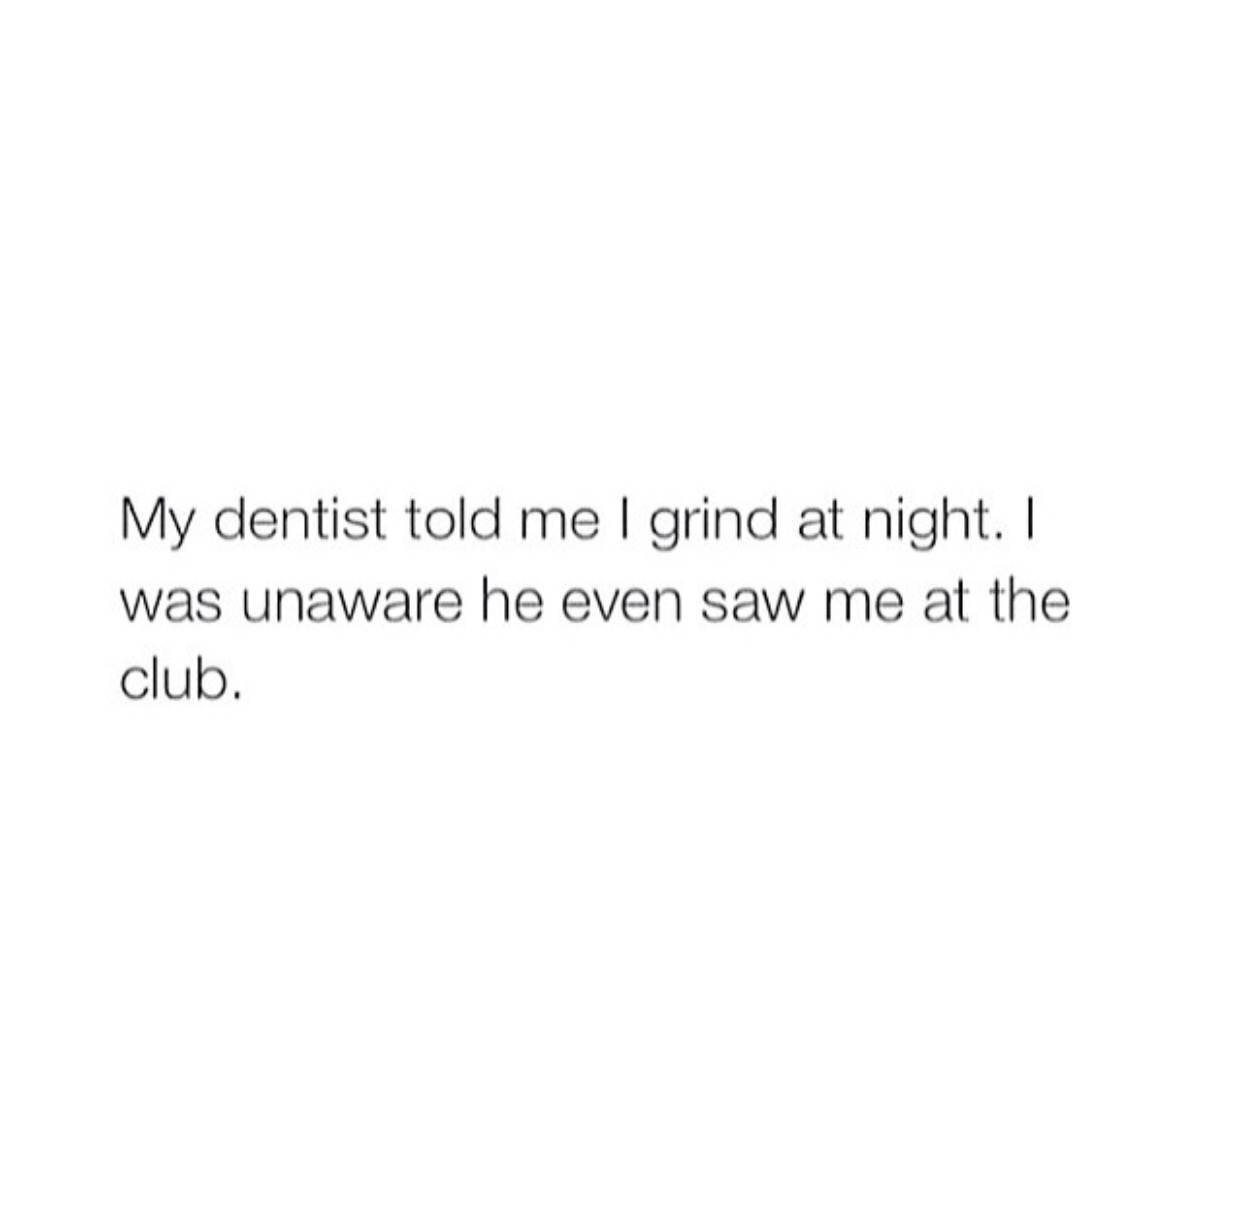 My dentist saw me grind - meme